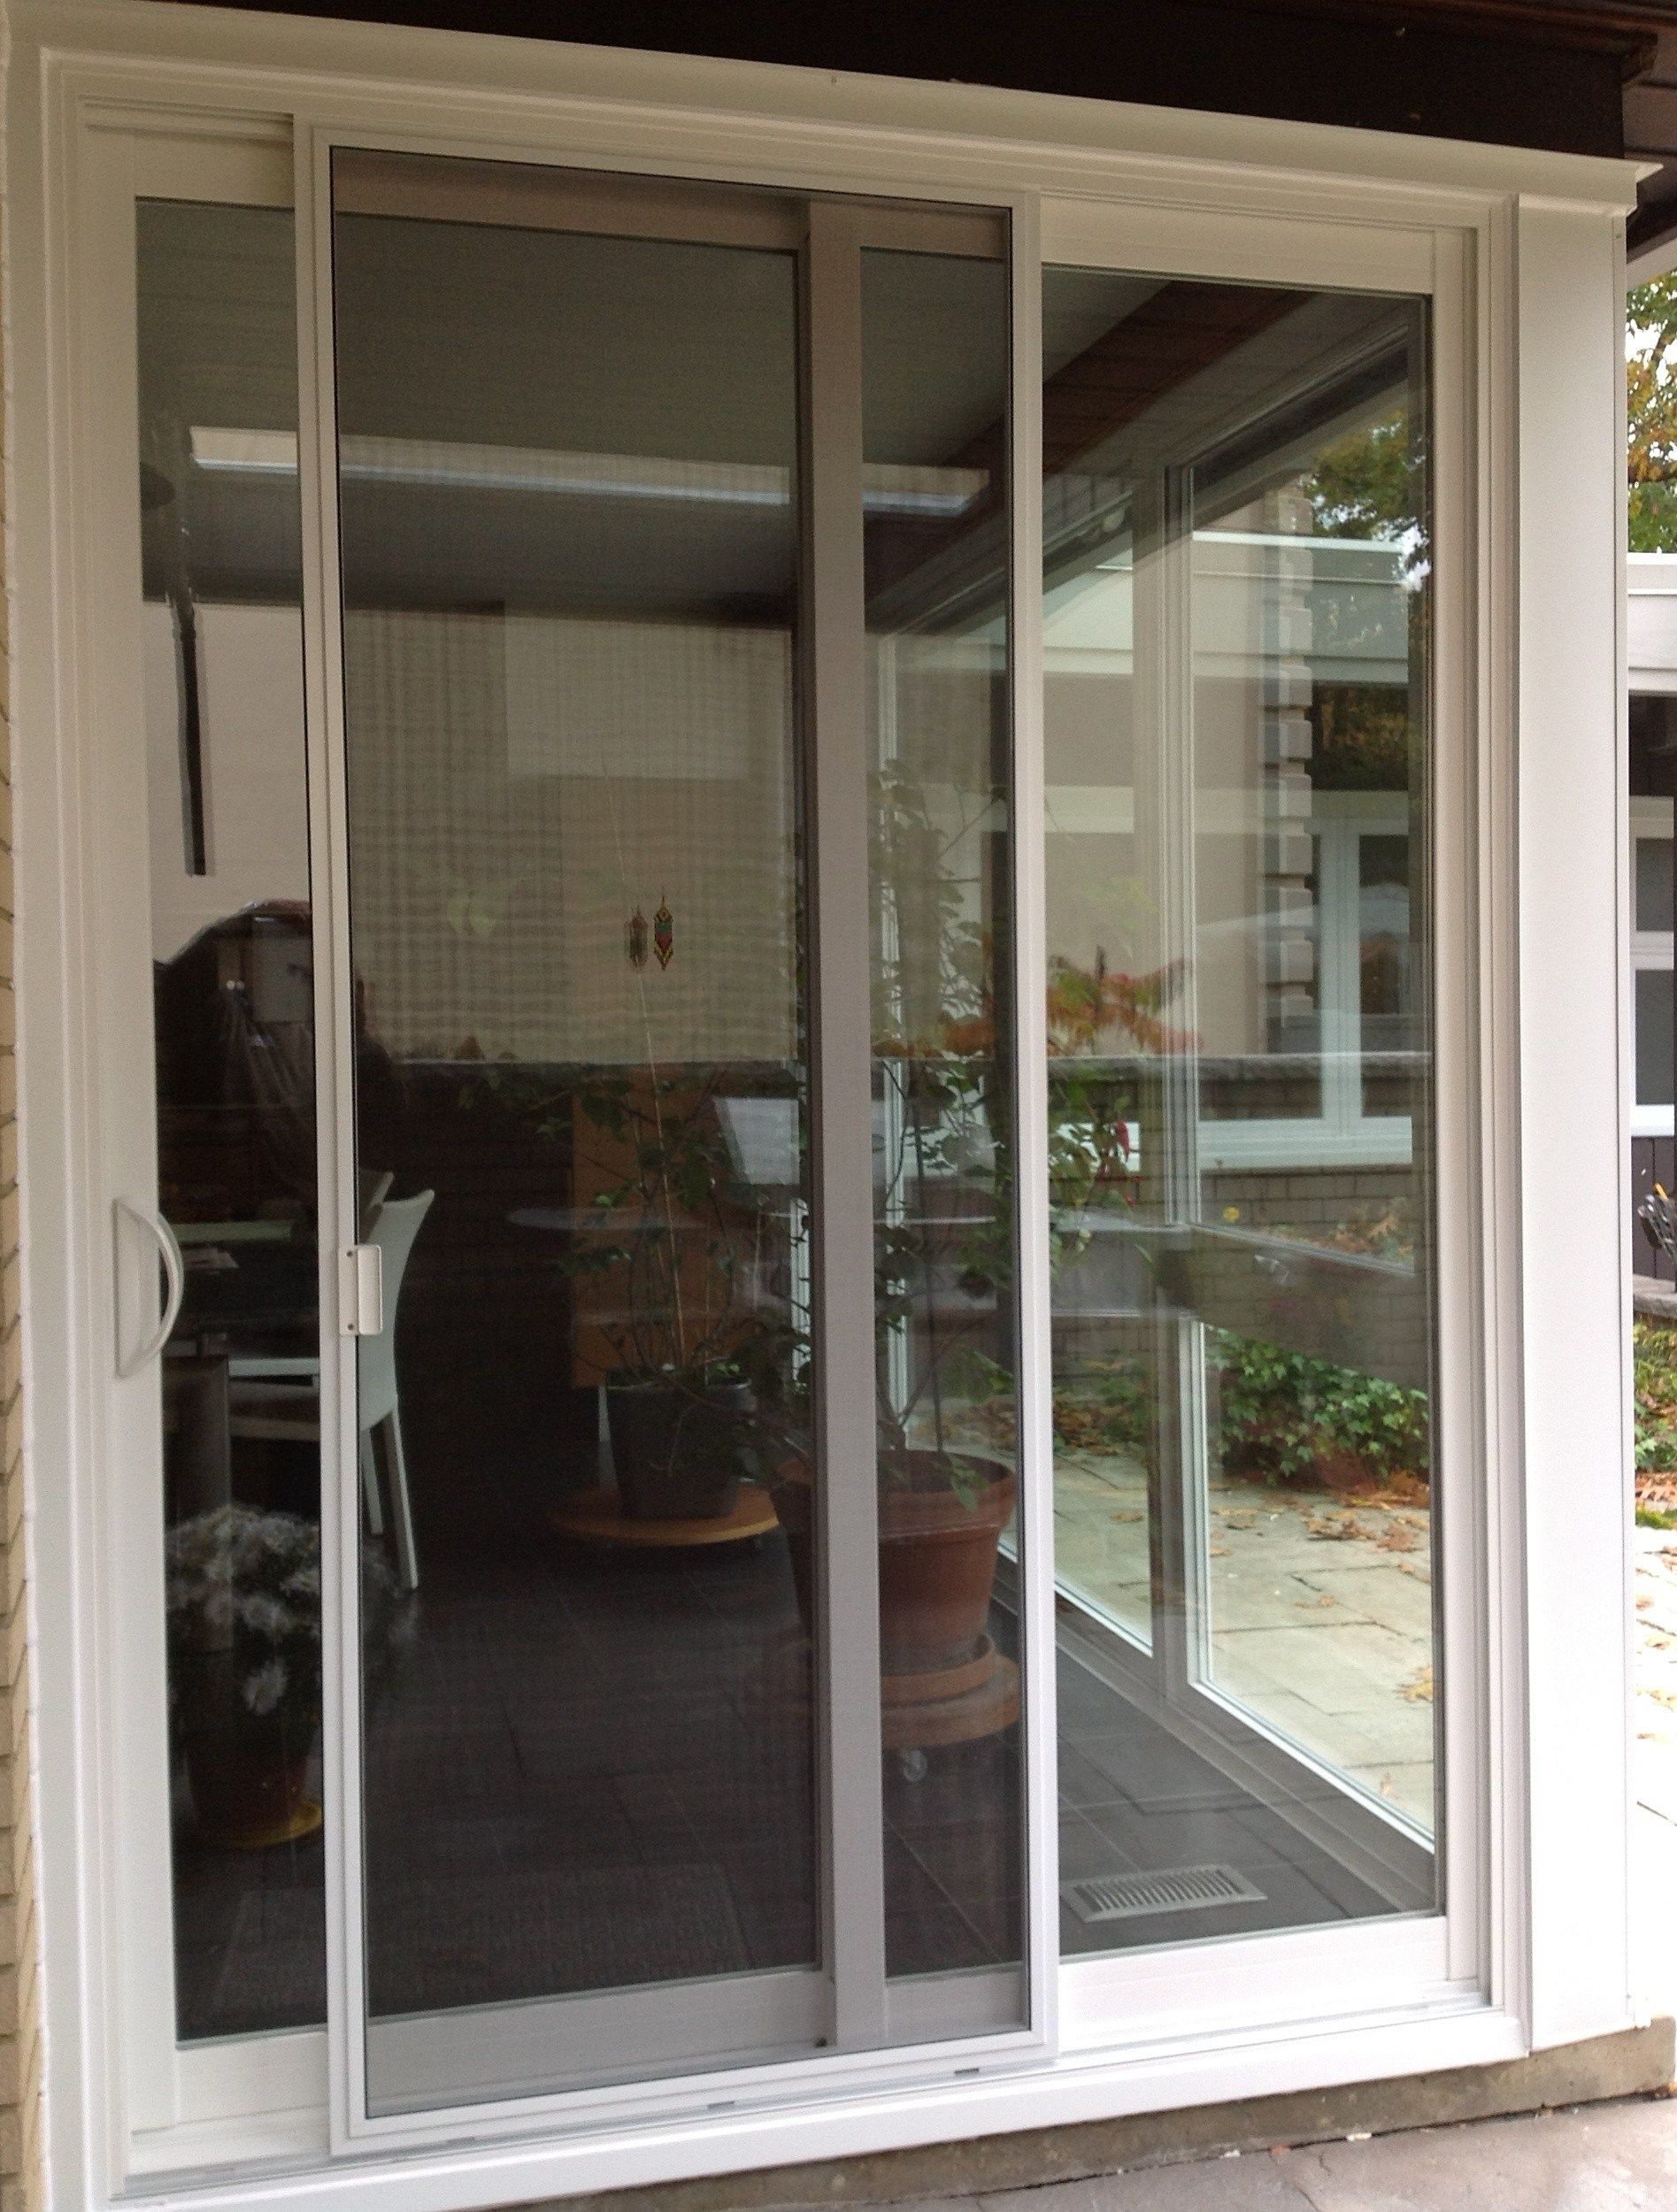 Best Of Door Handles For Sliding Glass Doors Home Decor within measurements 1895 X 2500